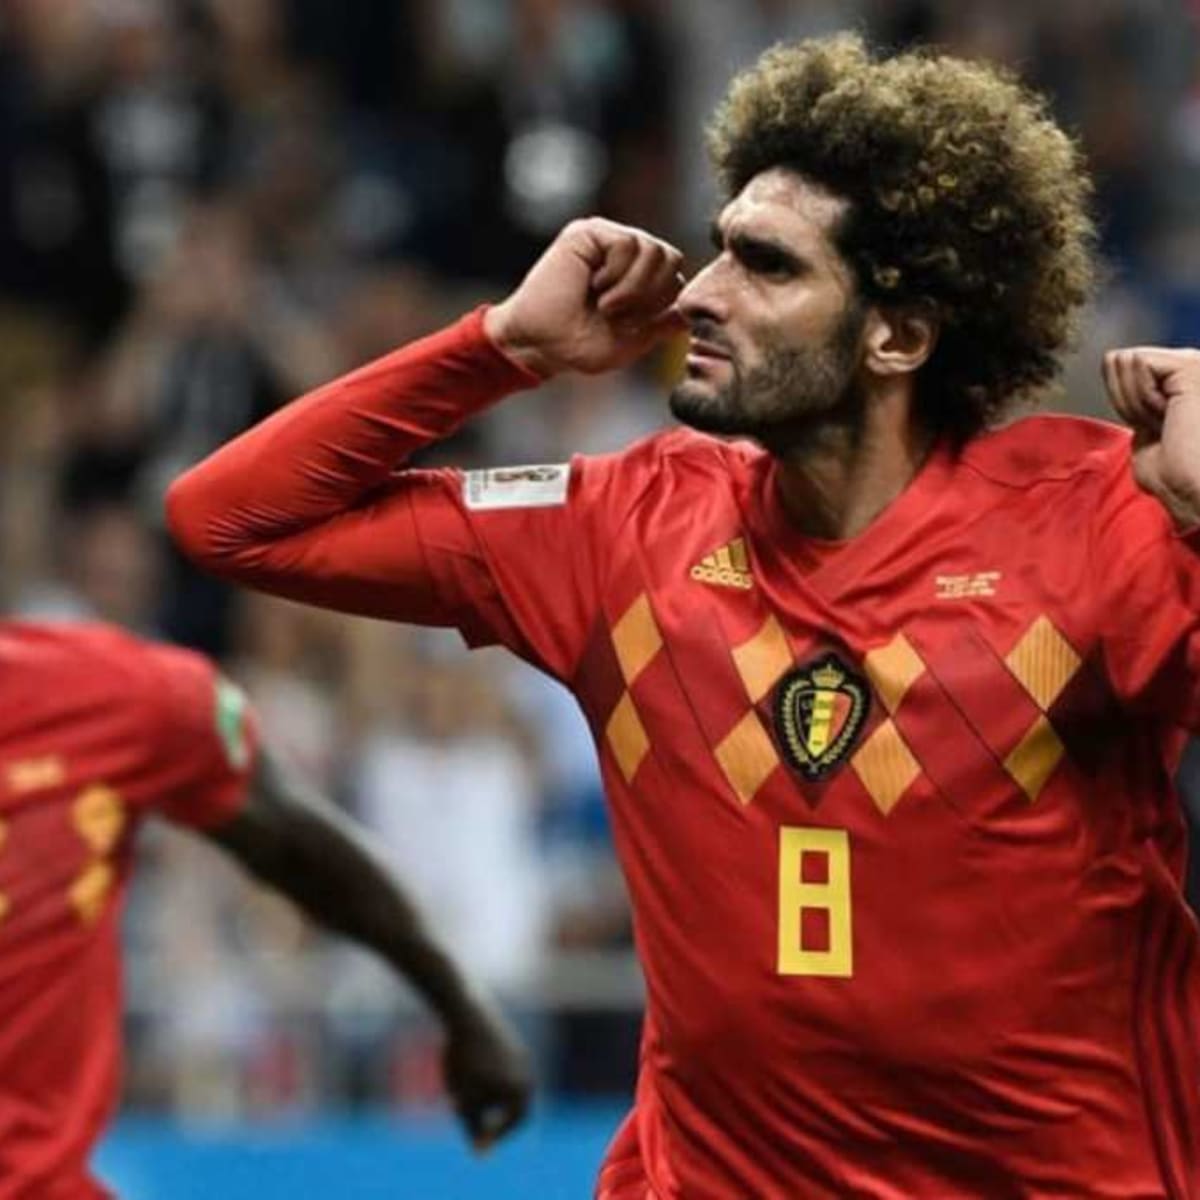 Belgium's World Cup legends' jerseys